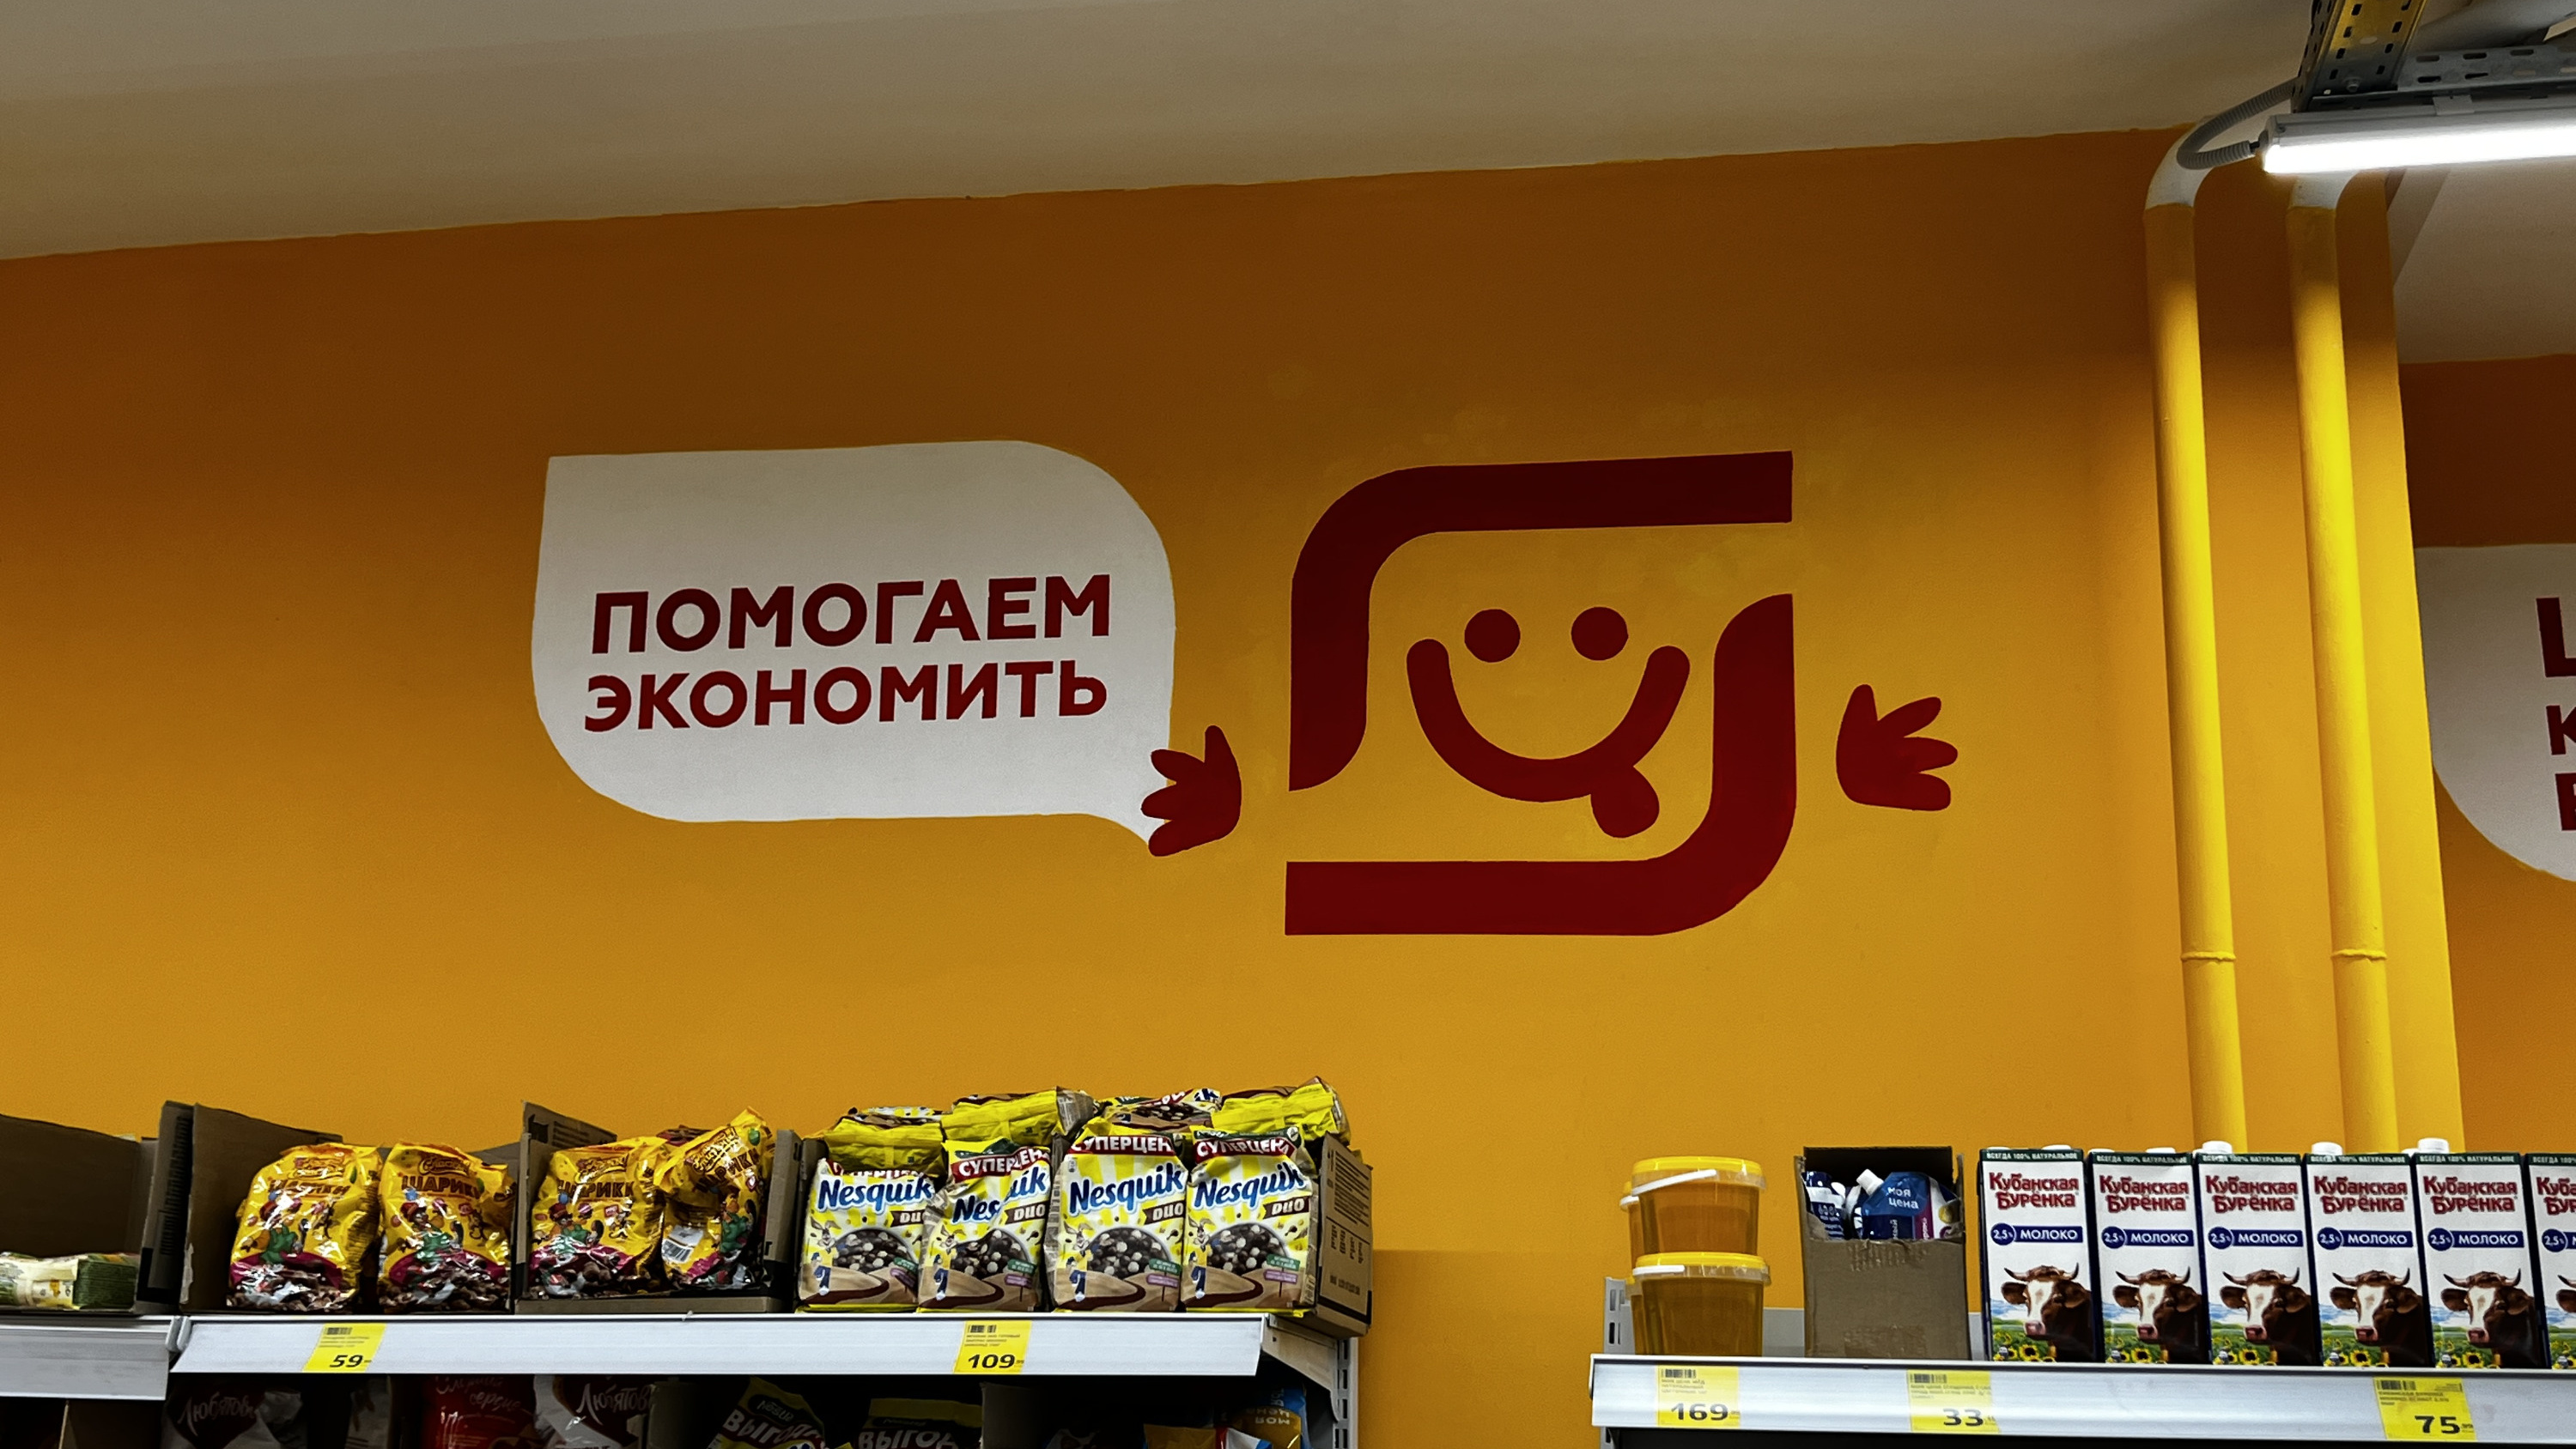 Порошок дешевле в 1,5 раза, колбаса — в 2. Репортаж из экспериментального магазина низких цен в Краснодаре